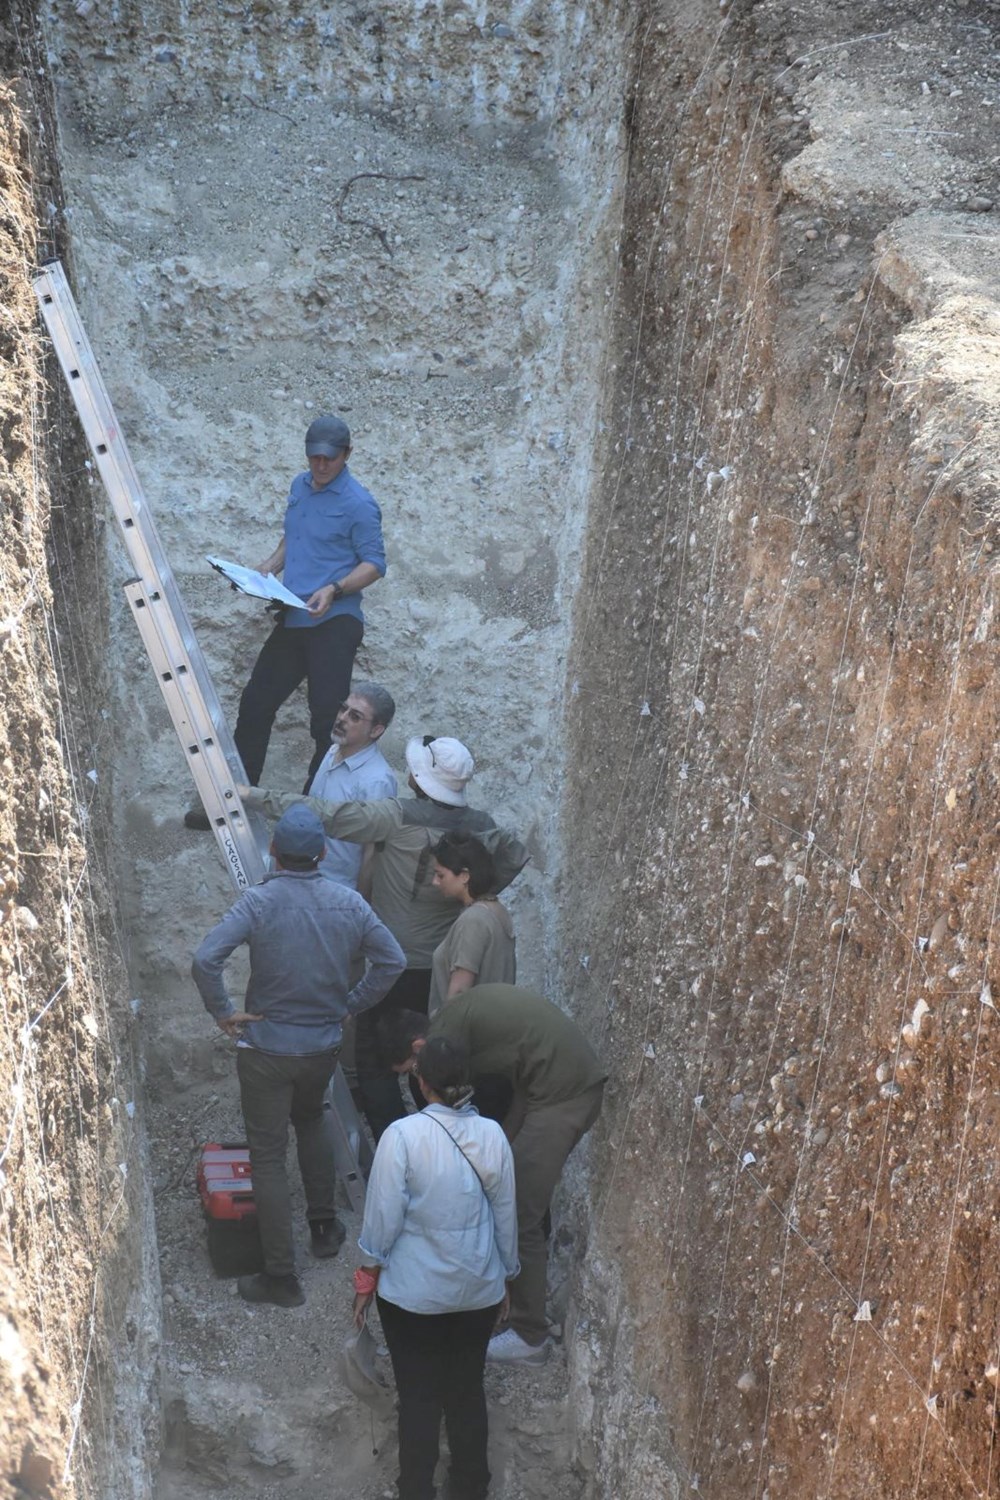 İzmir’de Kemalpaşa’nın altından geçen faya yakın takip |
Bilim insanları hendek açıp inceleme yaptı: “6,7 büyüklüğünde deprem üretebilir” - 2